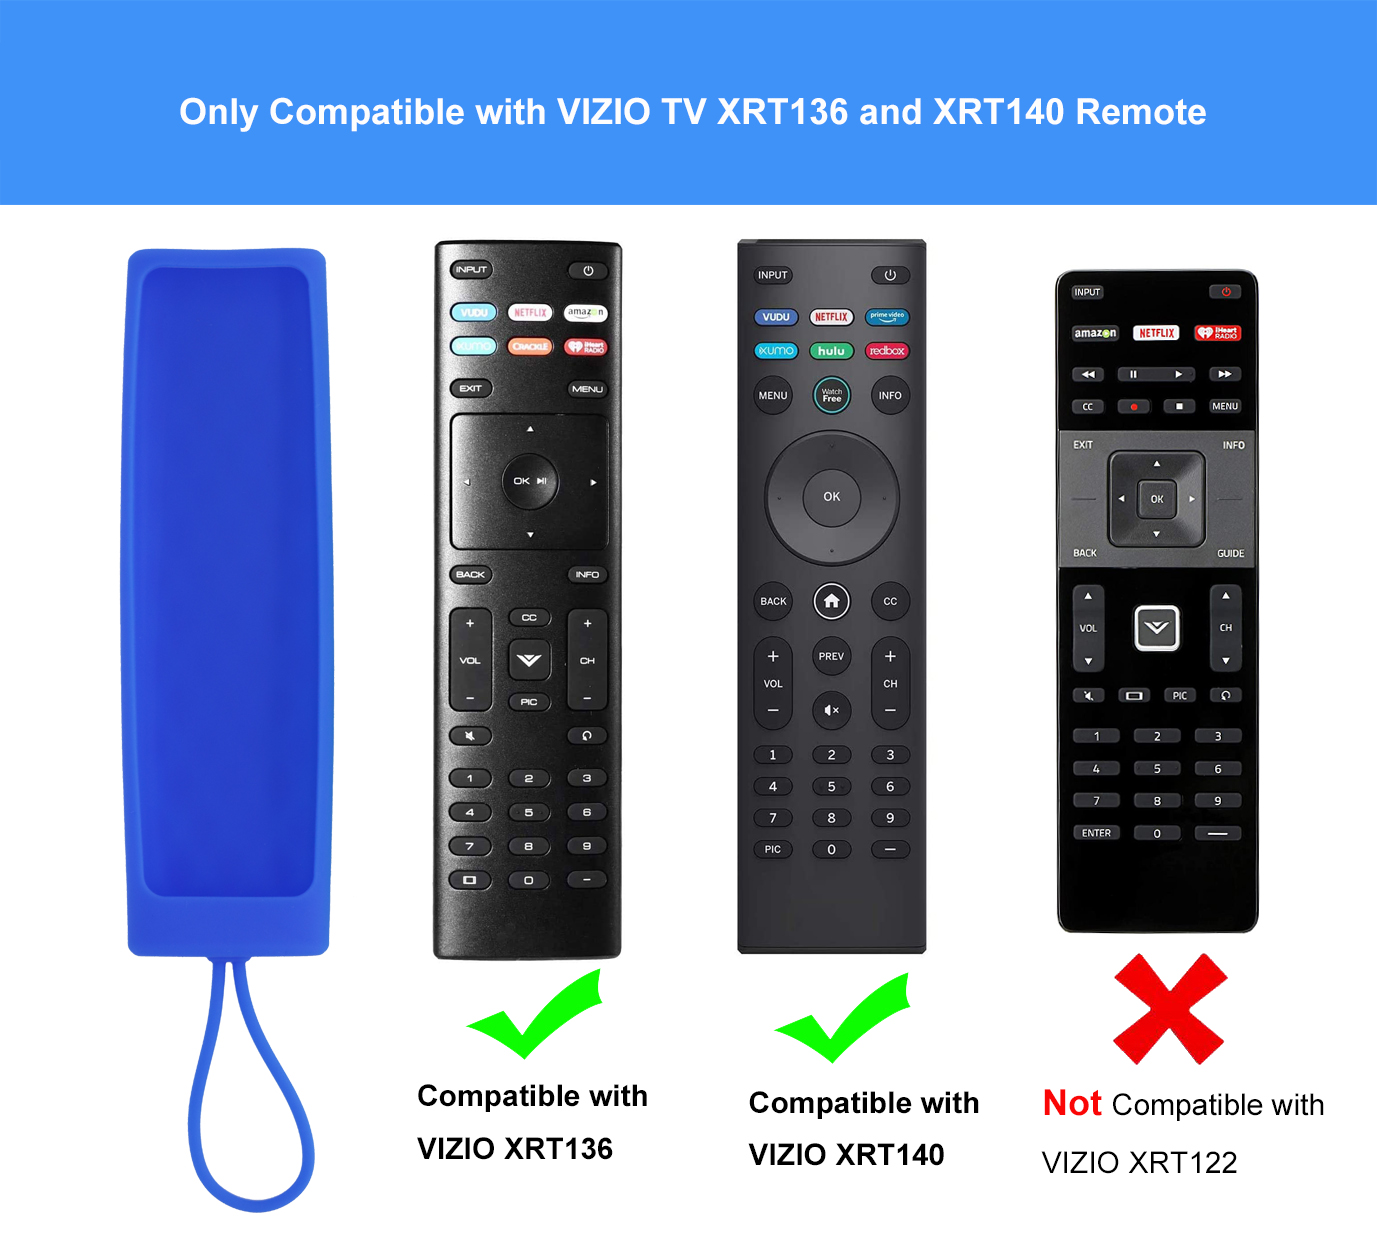 TOKERSE Remote Case Compatible with Vizio XRT136 Smart TV Remote Control - Anti-Lost Anti-Slip Silicone Cover Case Fits for New Vizio XRT136 LCD LED TV Remote Controller - Green